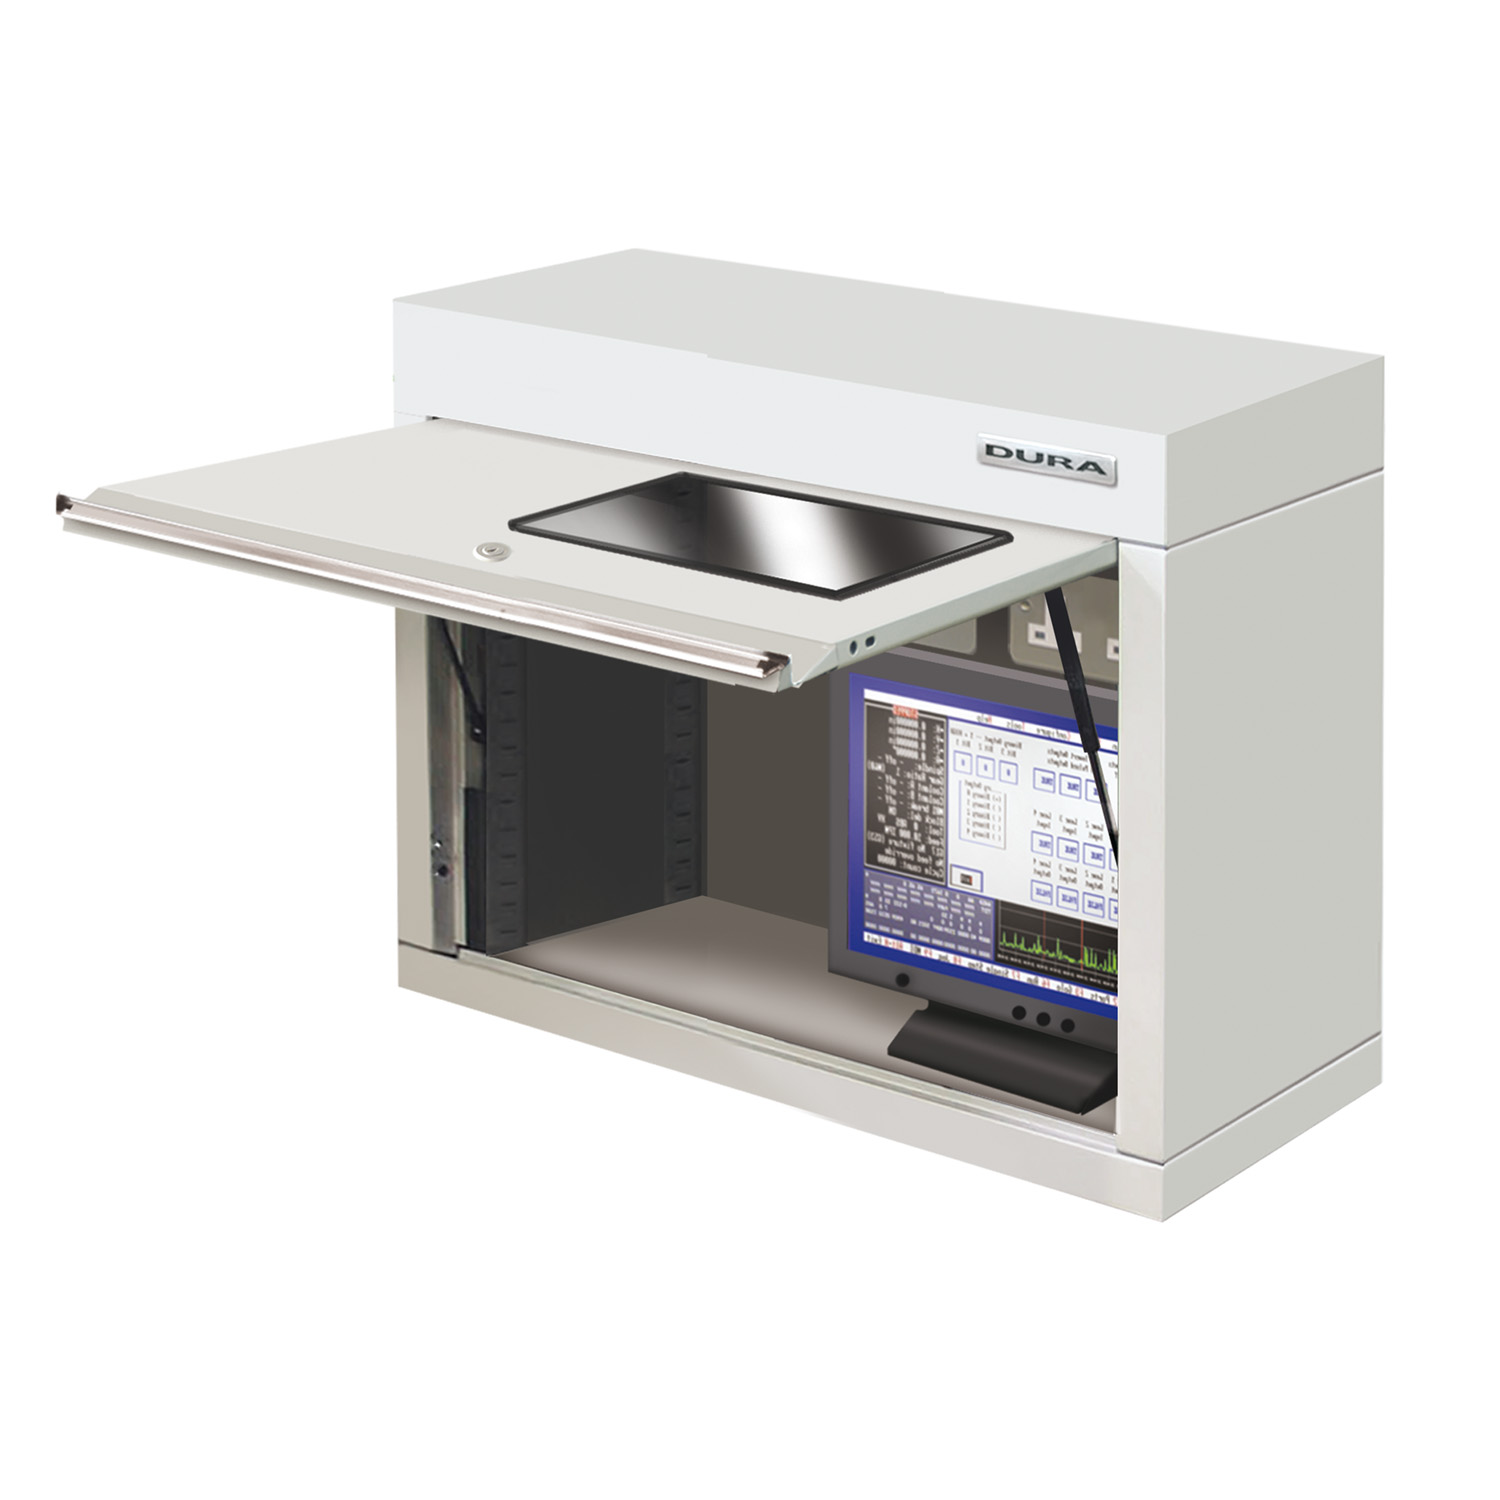 Schrank mit Acryl-Monitorfenster oder eingebautem Monitor (900mm)